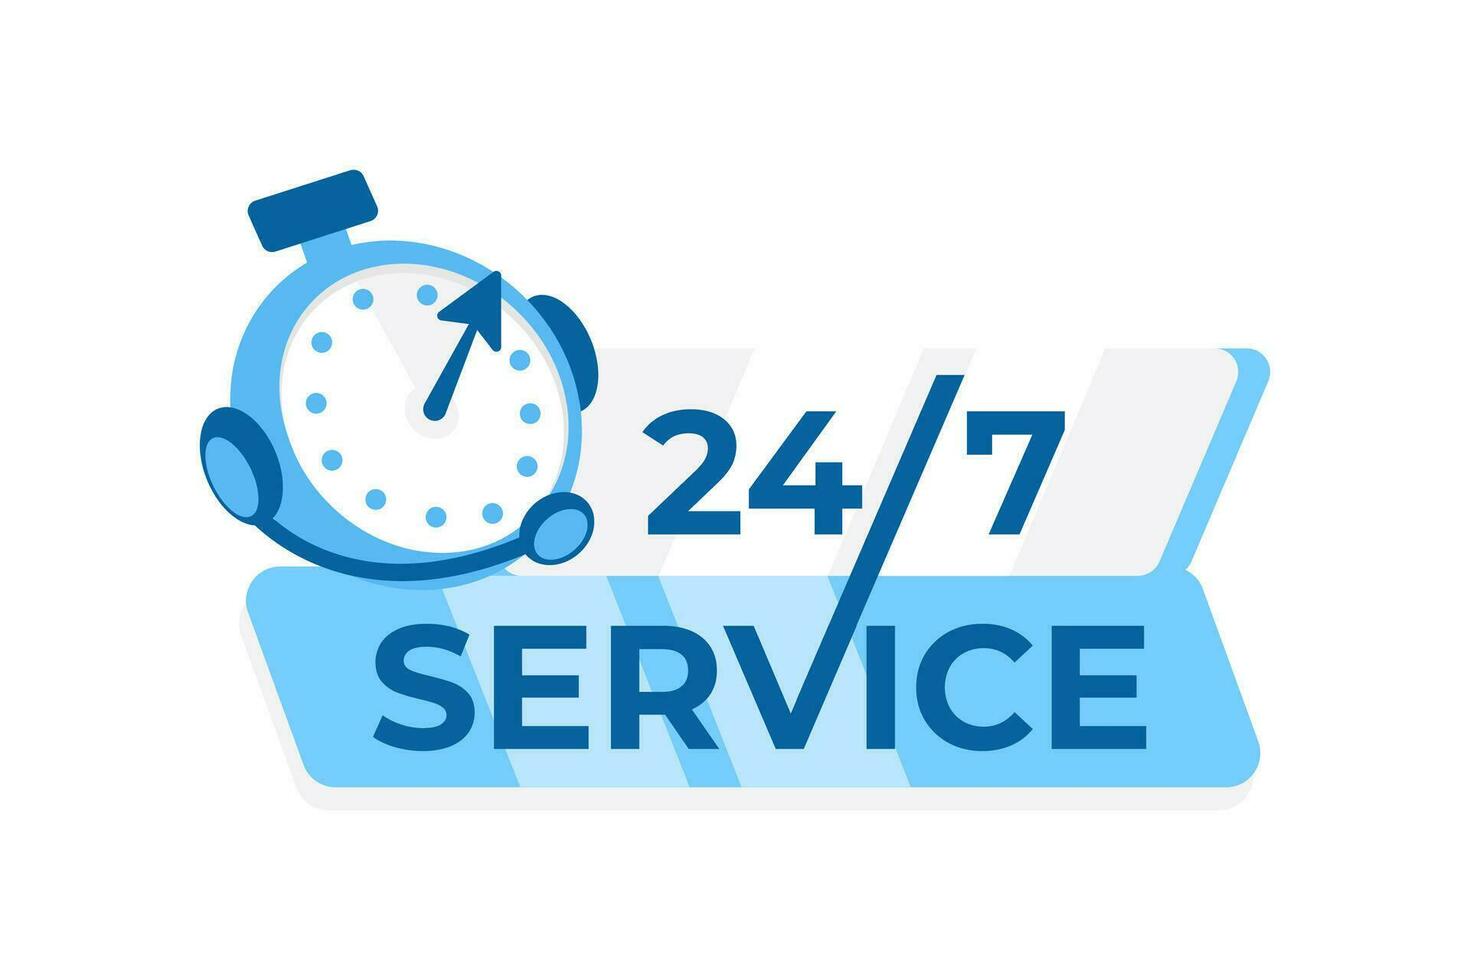 24 7 serviço conceito com uma relógio e estilizado texto, ideal para negócios oferta 24 horas por dia Serviços e cliente Apoio, suporte vetor